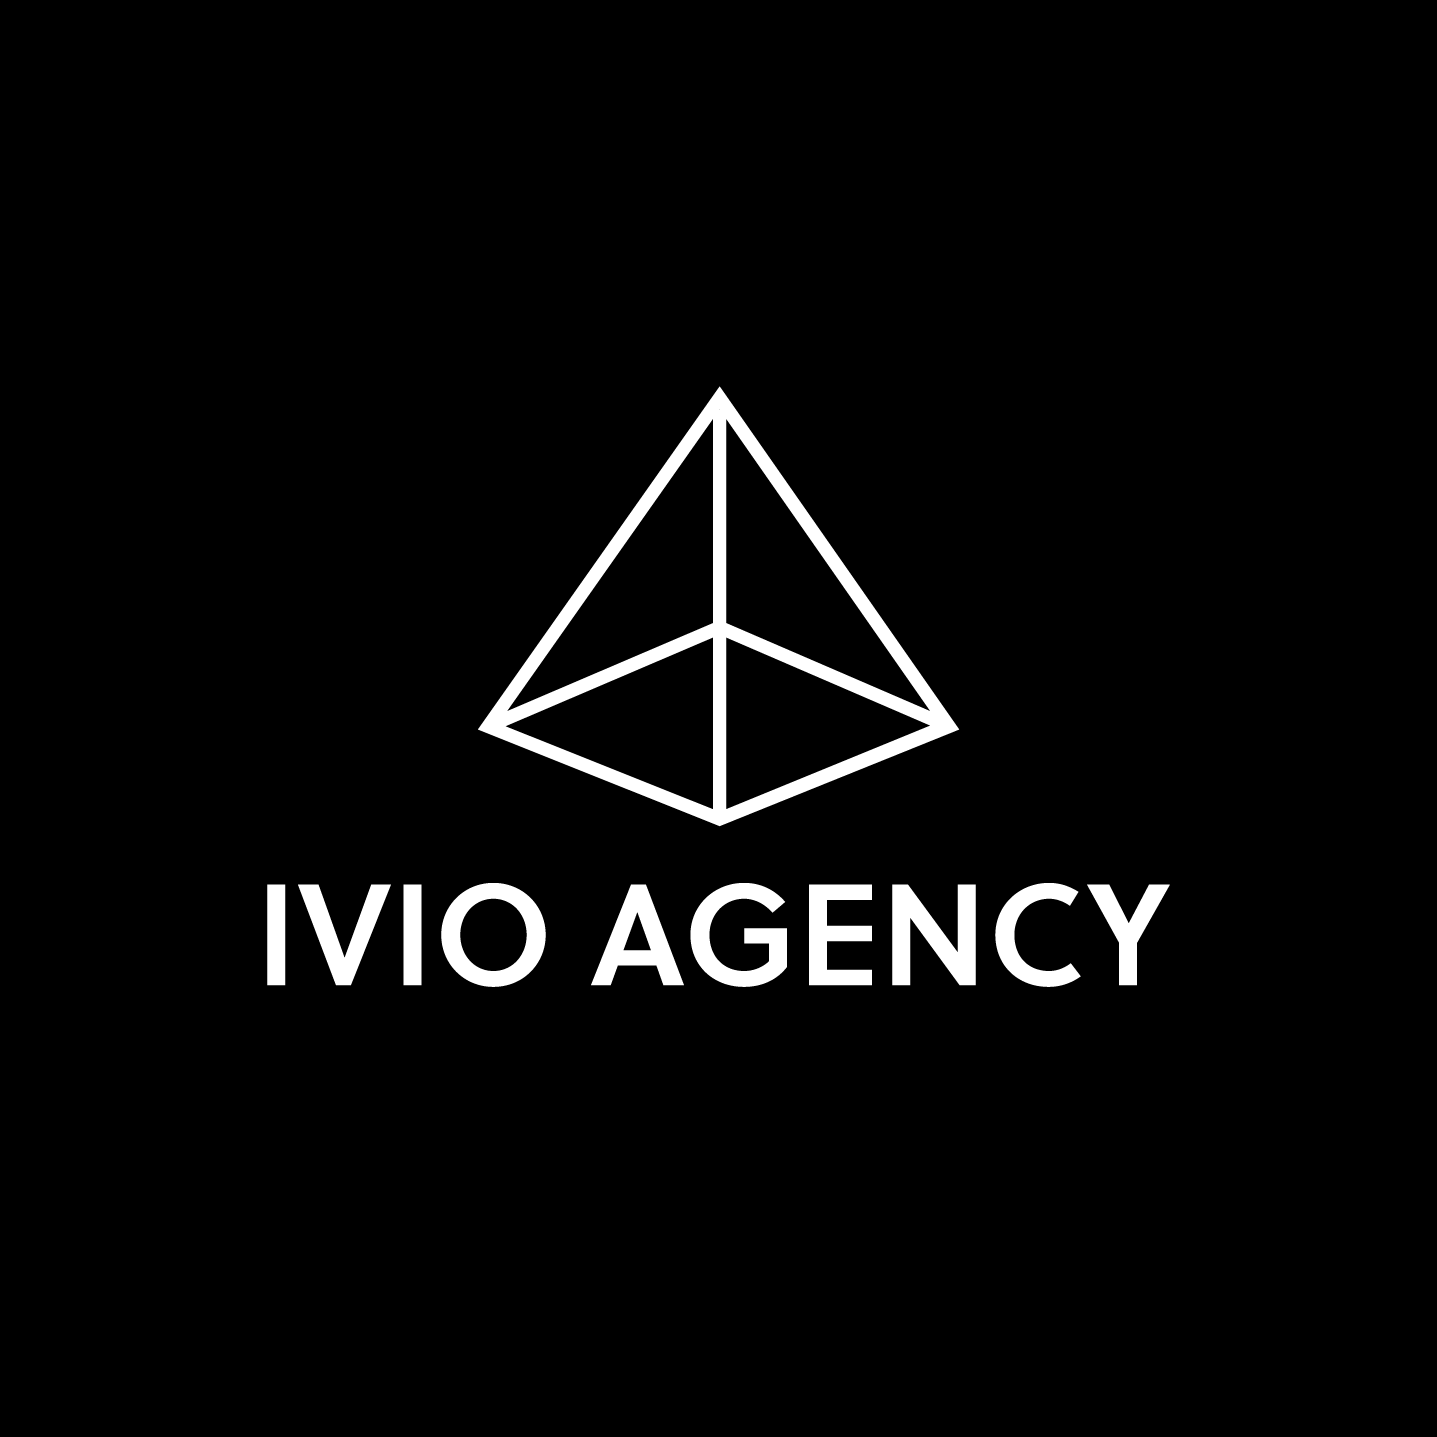 Company logo of Ivio Agency